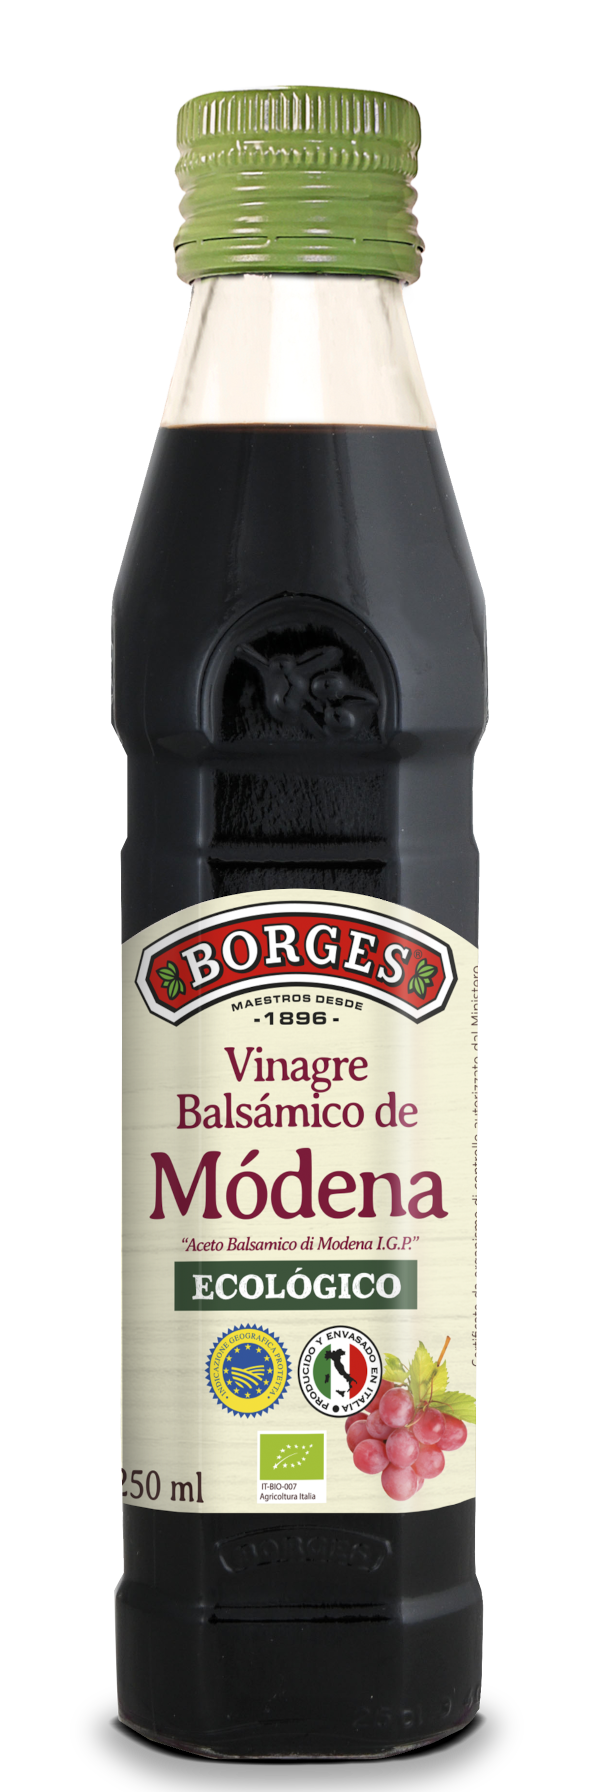 Borges - Vinagre balsámico de Módena ecológico